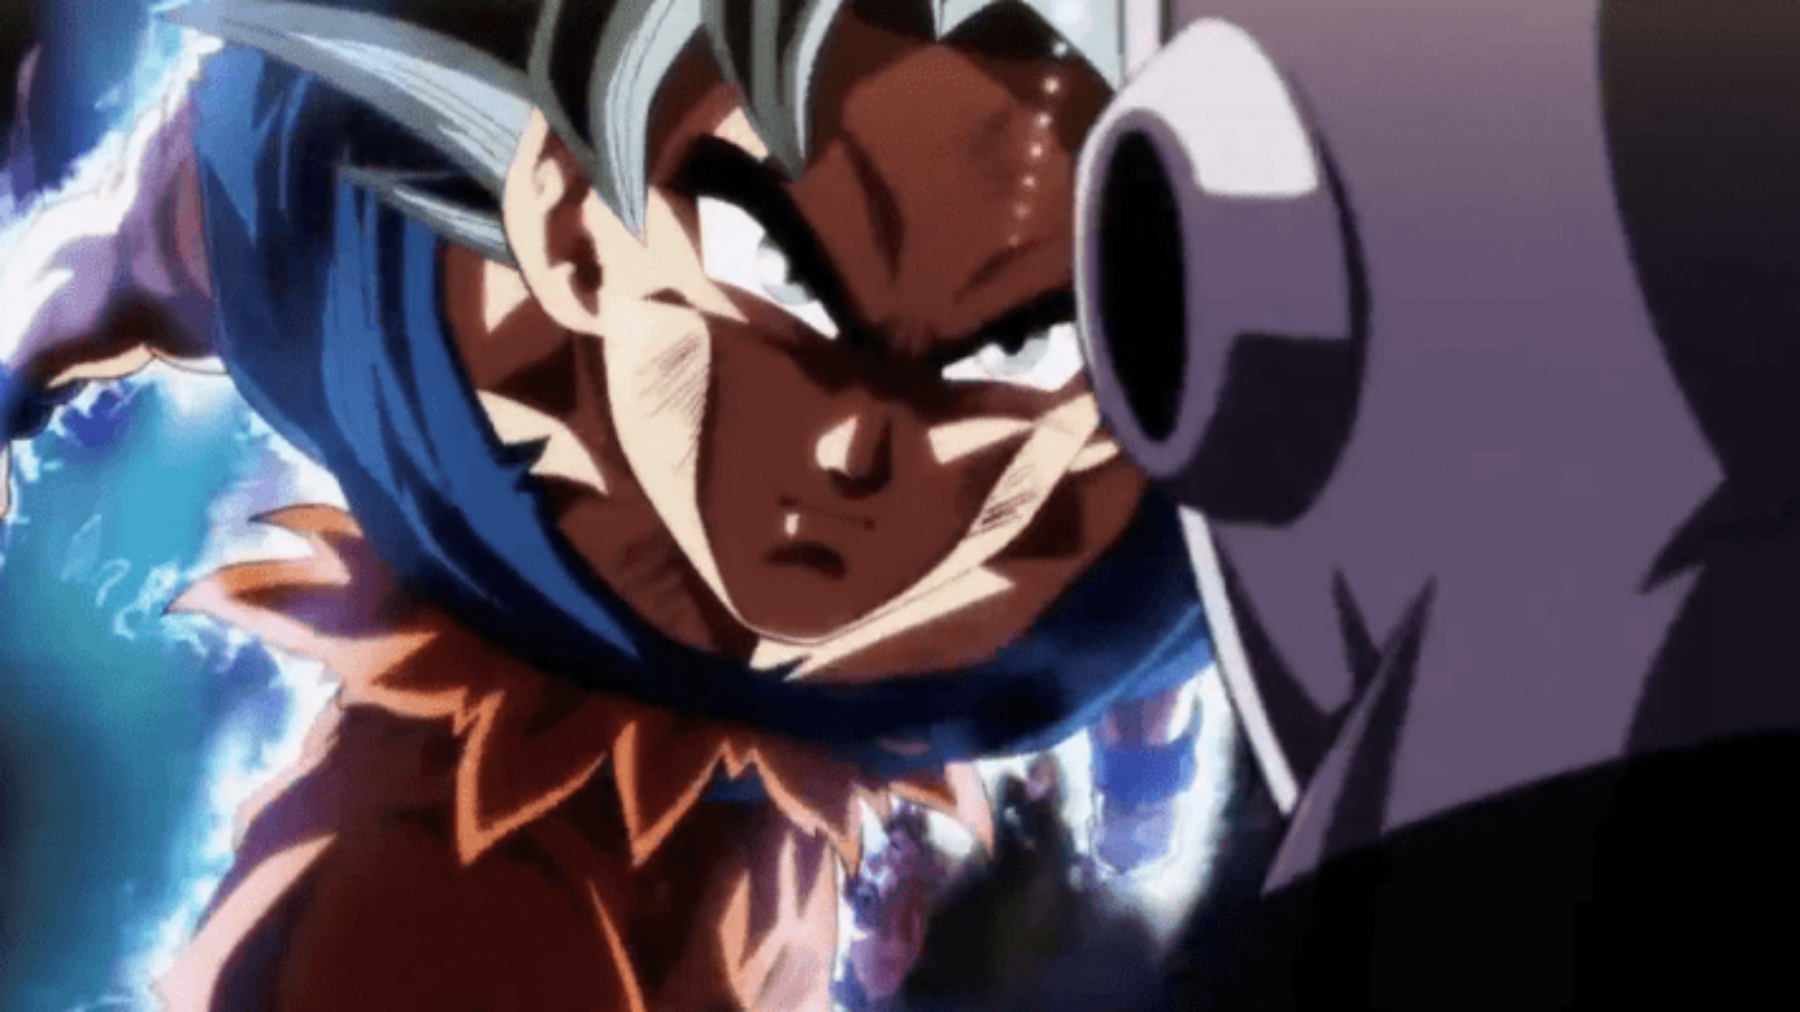 La batalla de Goku vs Jiren fue cortada en su transmisión internacional